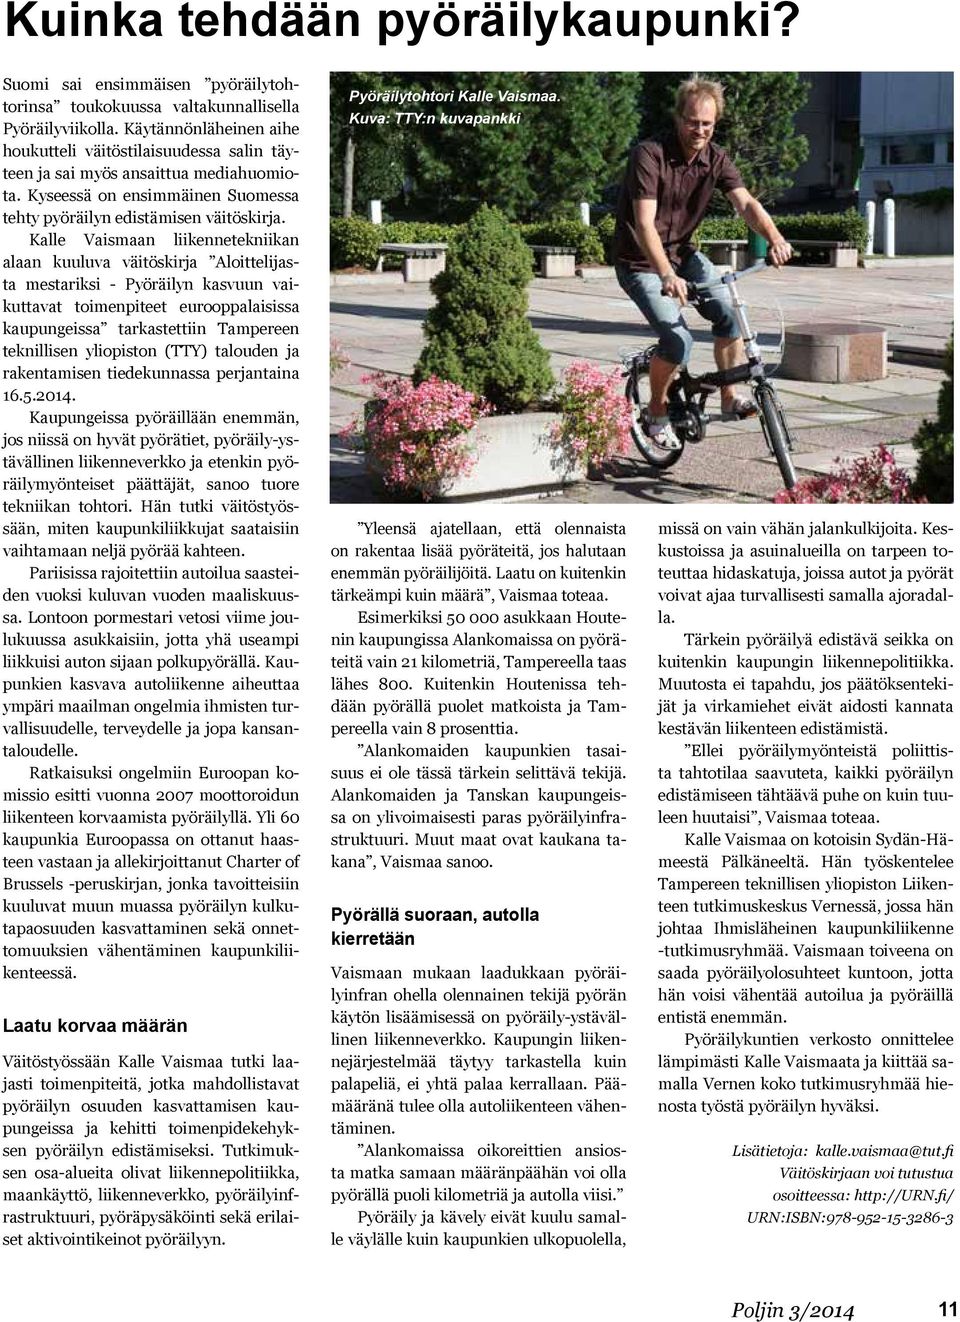 Kalle Vaismaan liikennetekniikan alaan kuuluva väitöskirja Aloittelijasta mestariksi - Pyöräilyn kasvuun vaikuttavat toimenpiteet eurooppalaisissa kaupungeissa tarkastettiin Tampereen teknillisen